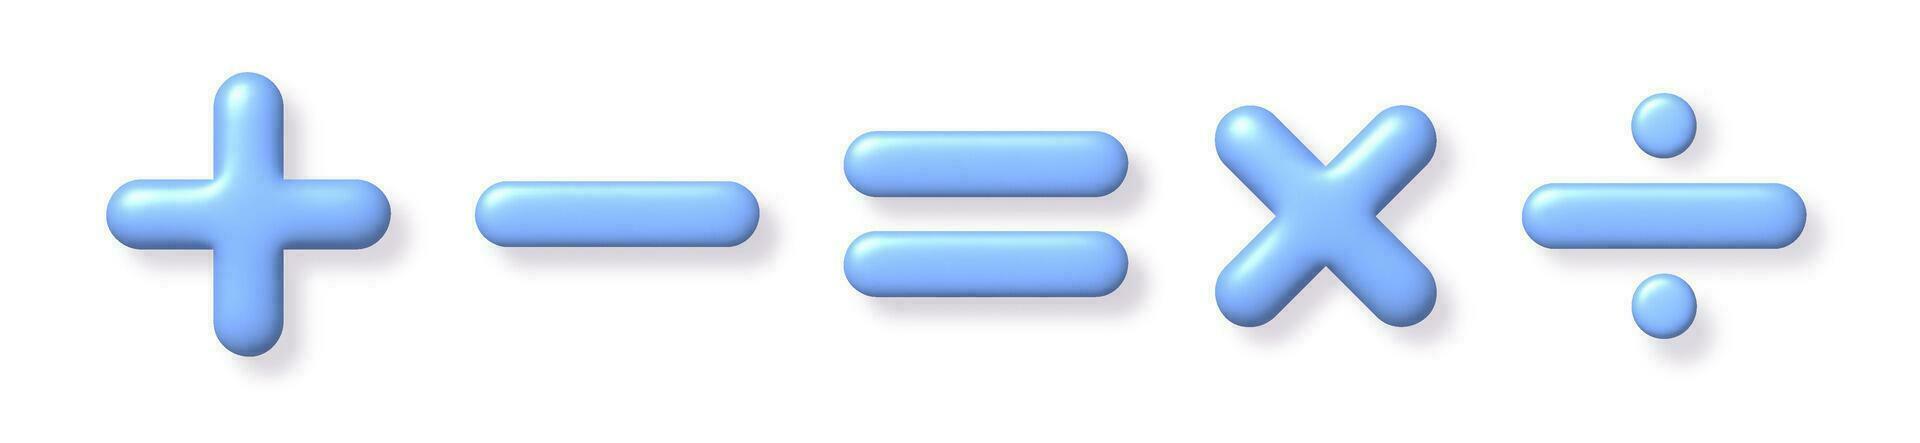 matemática 3d ícone definir. azul aritmética mais, menos, é igual a, multiplicar e dividir sinais em branco fundo com sombra. vetor ilustração.